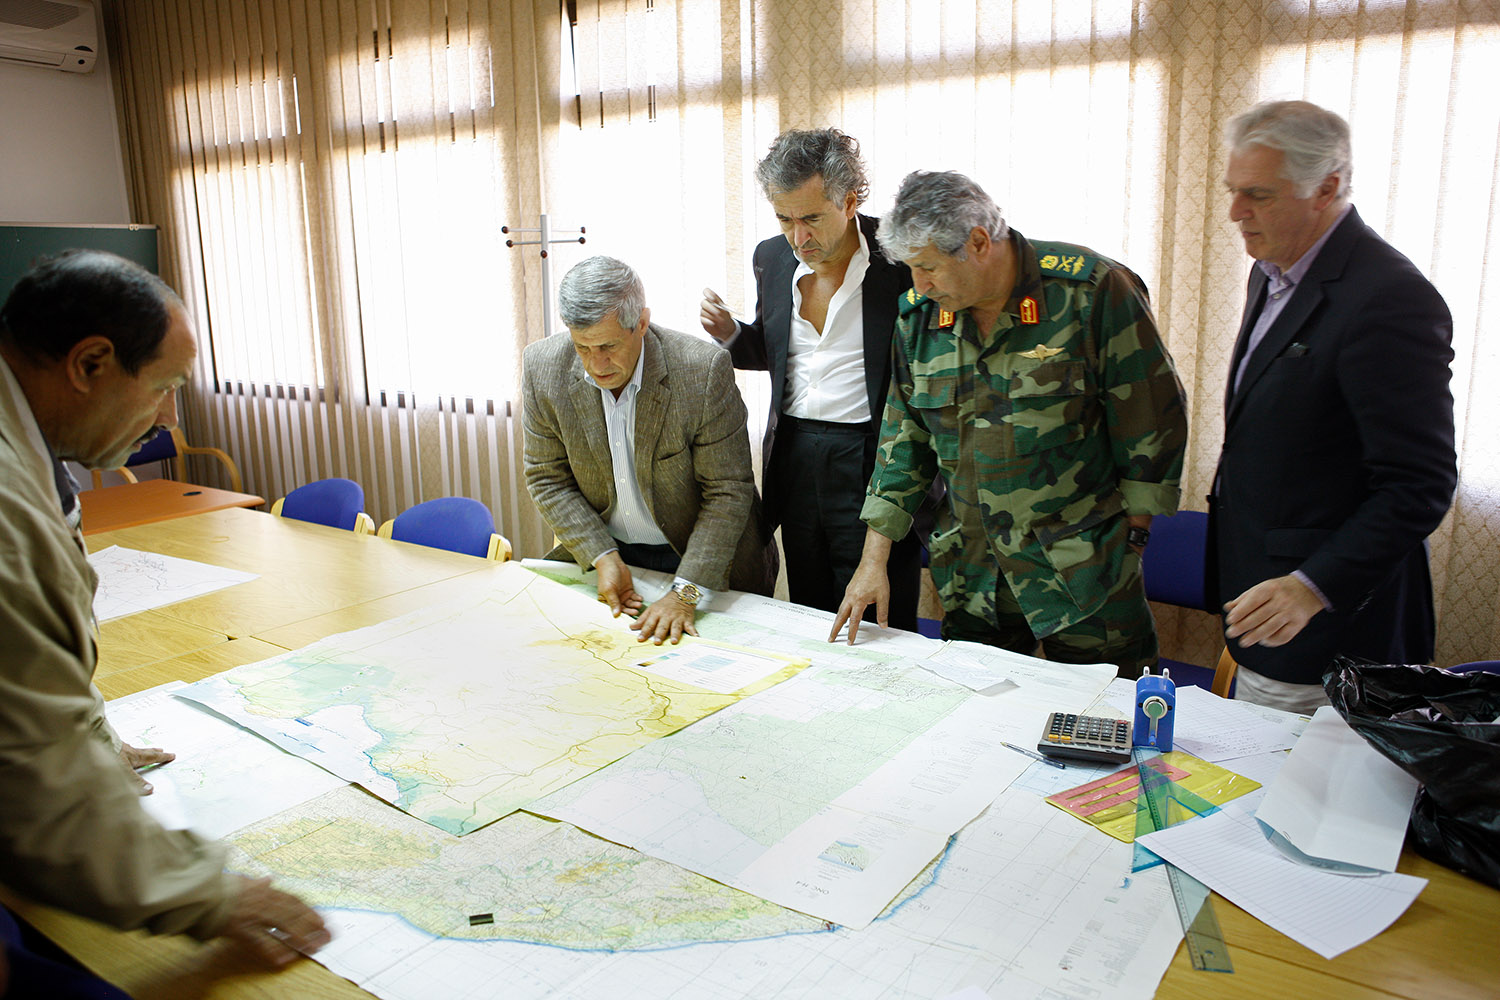 Bernard-Henri Lévy et Gilles Hertzog à Benghazi. Ils regardent des plans militaires autour d'une table avec des militaires en uniformes.